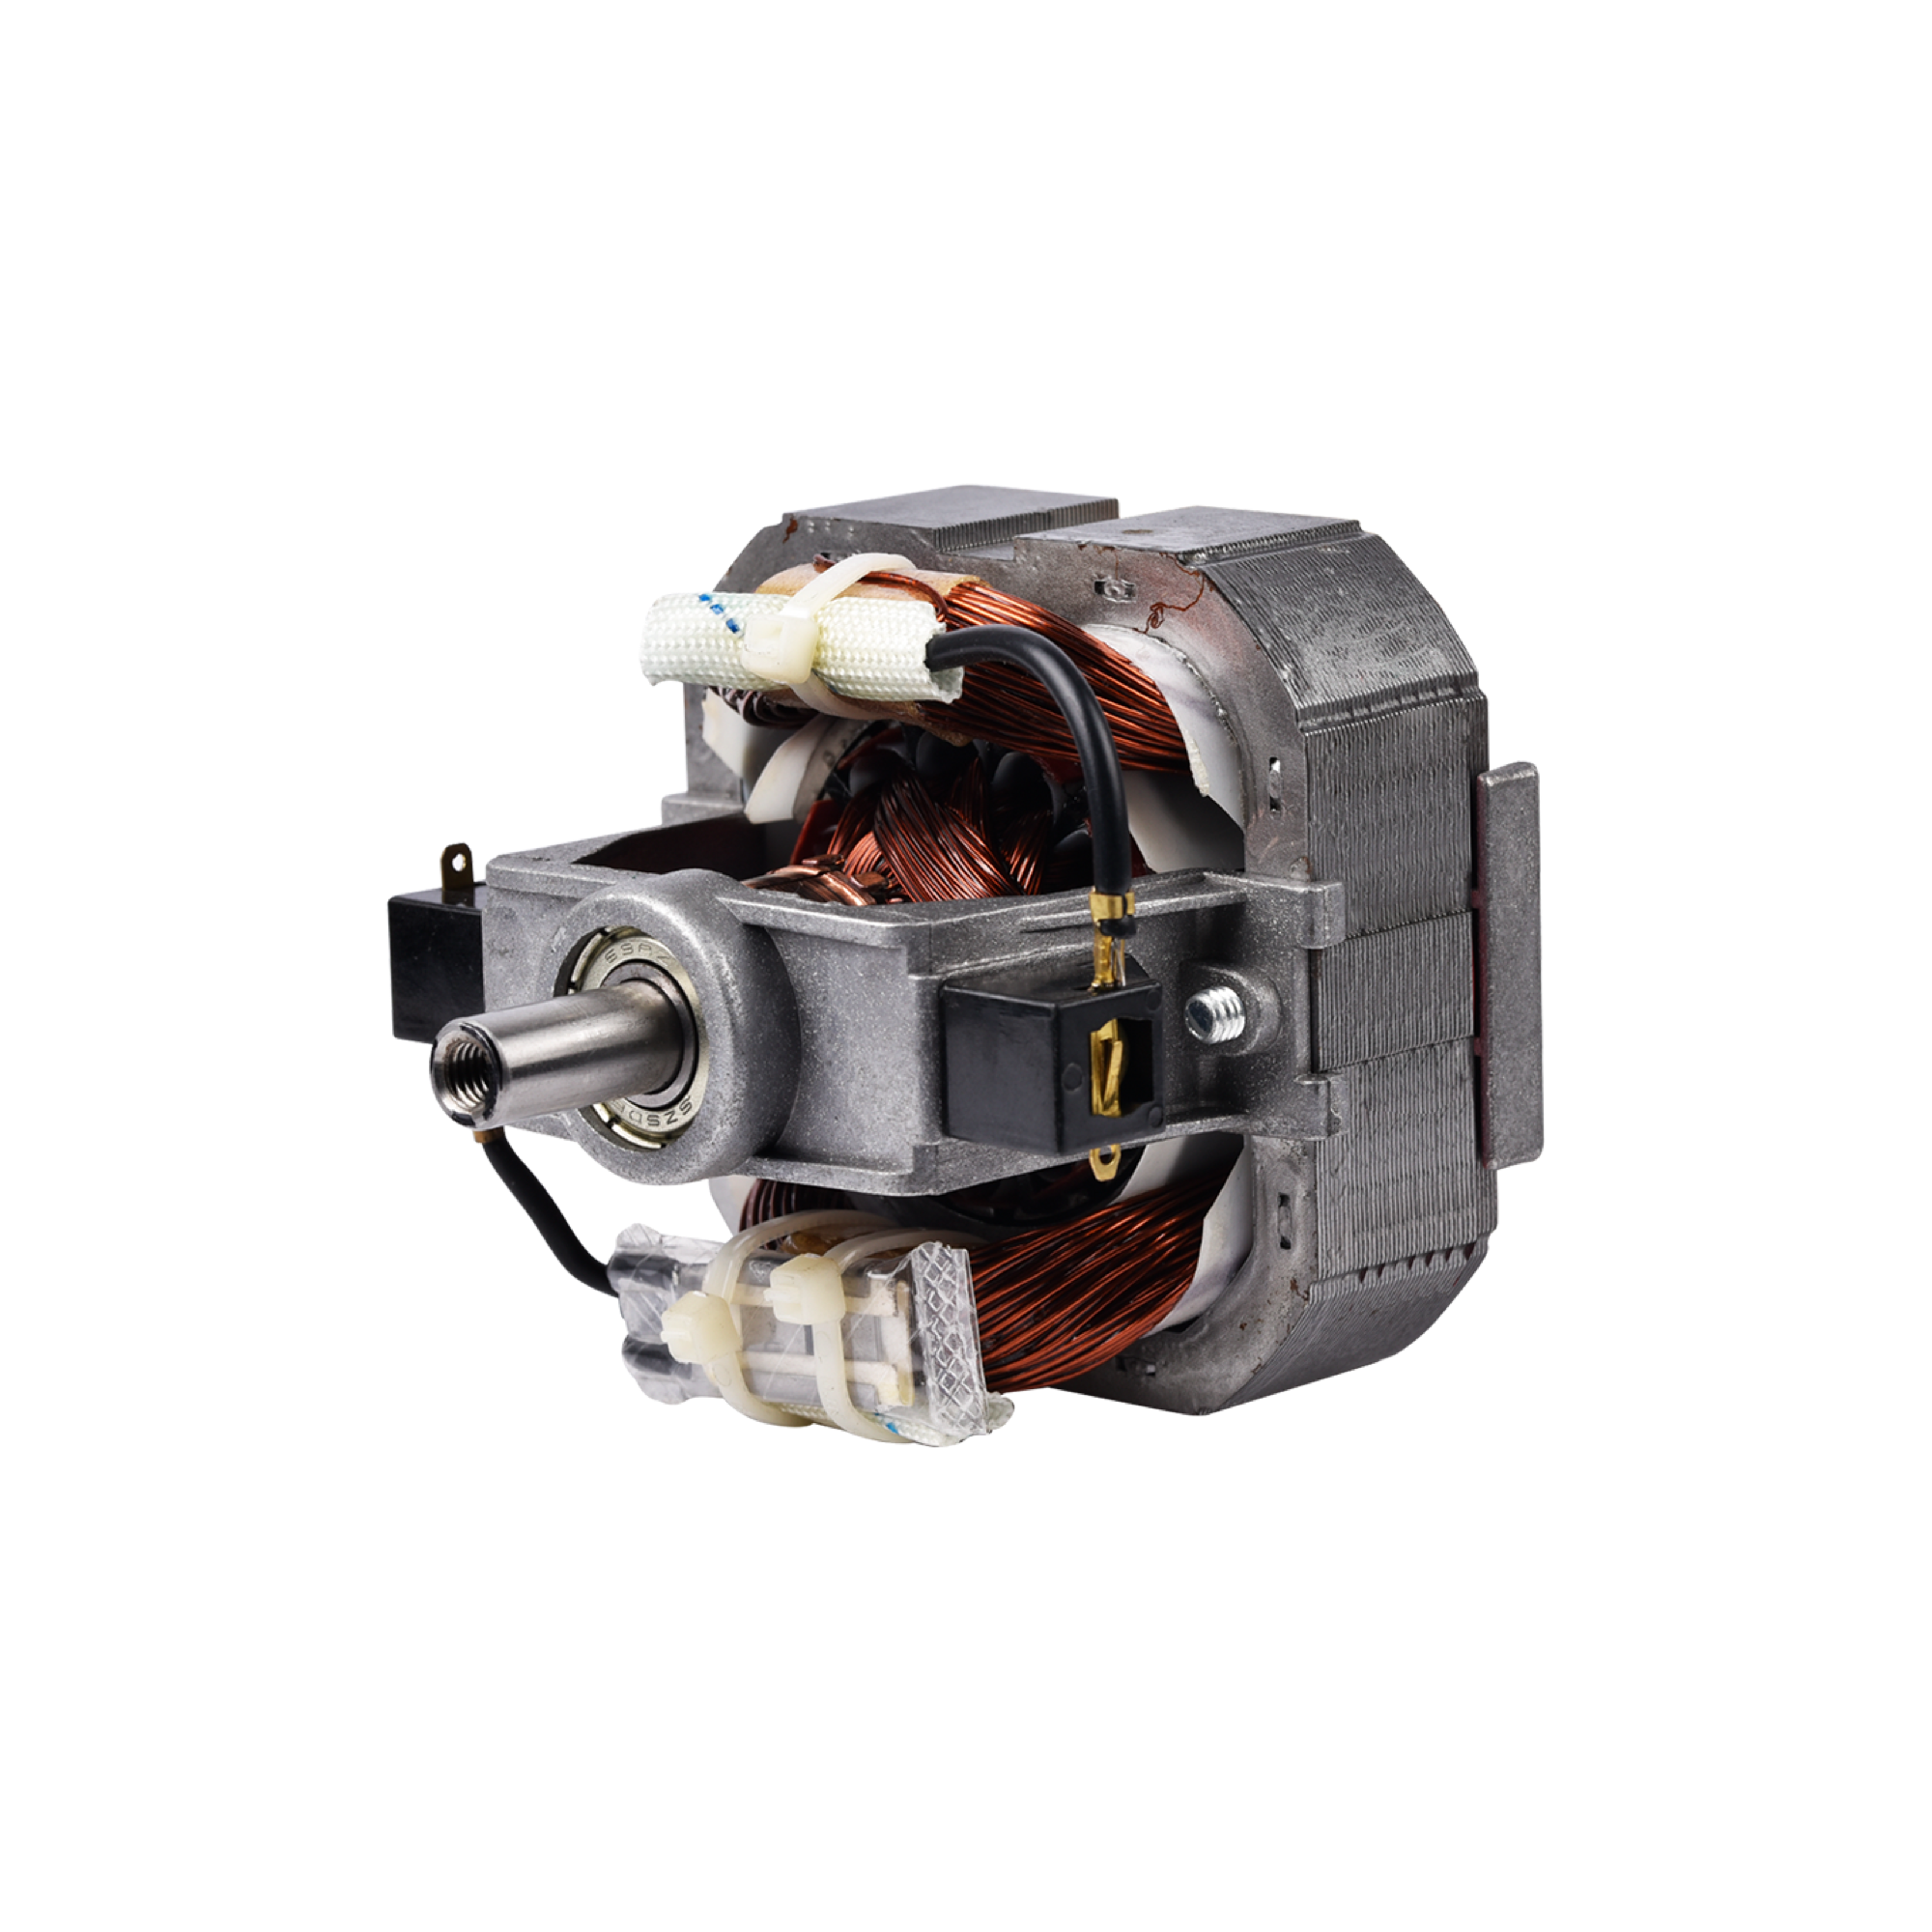 High-power mixer blender AC universal motor solution